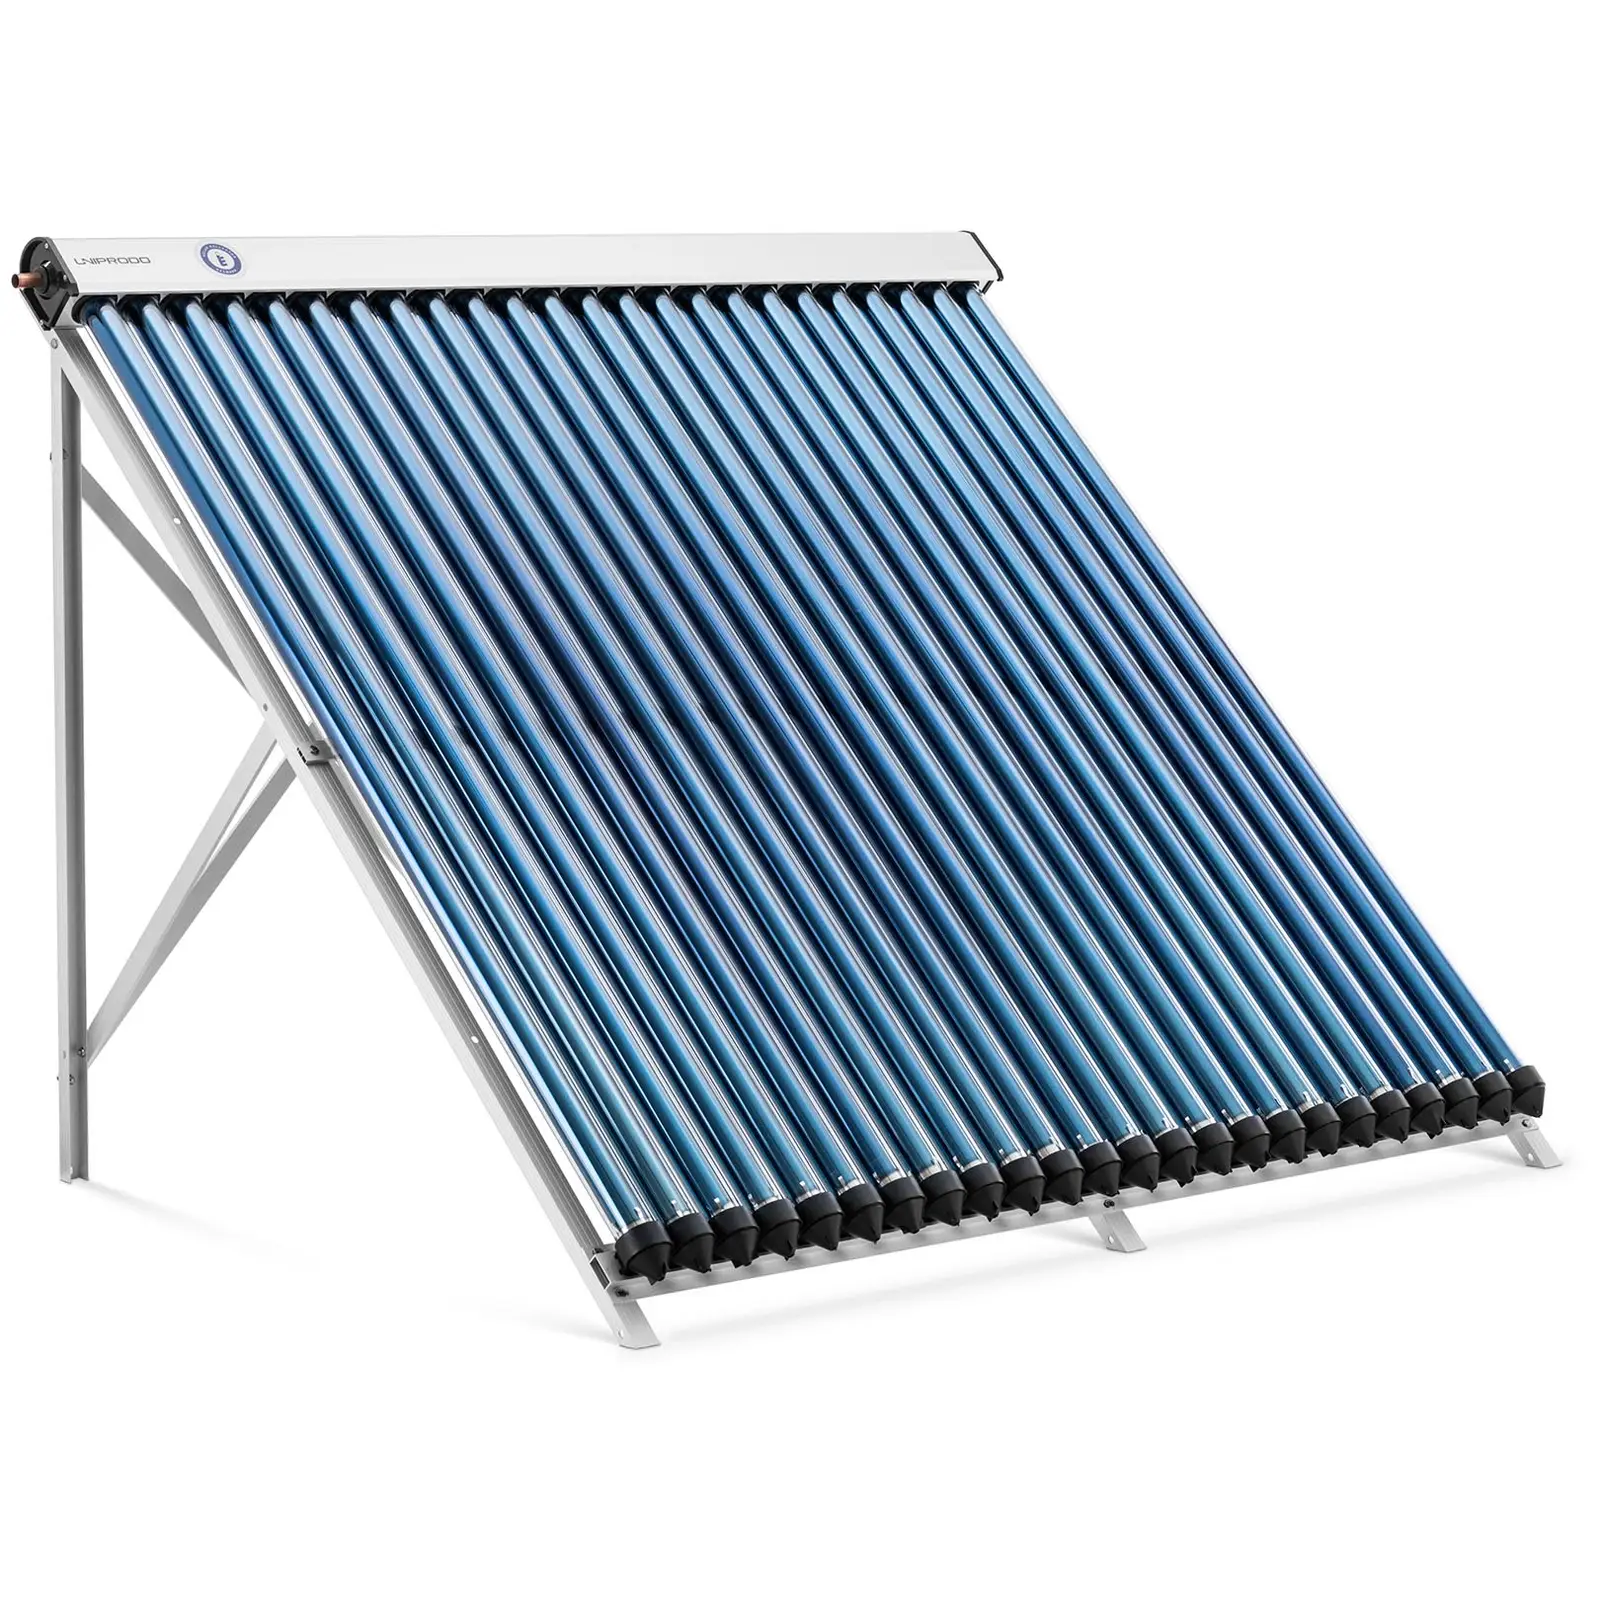 Colector solar de tubos - energía térmica solar - 24 tubos - 200 - 240 L - 1.92 m² - -45 - 90 °C